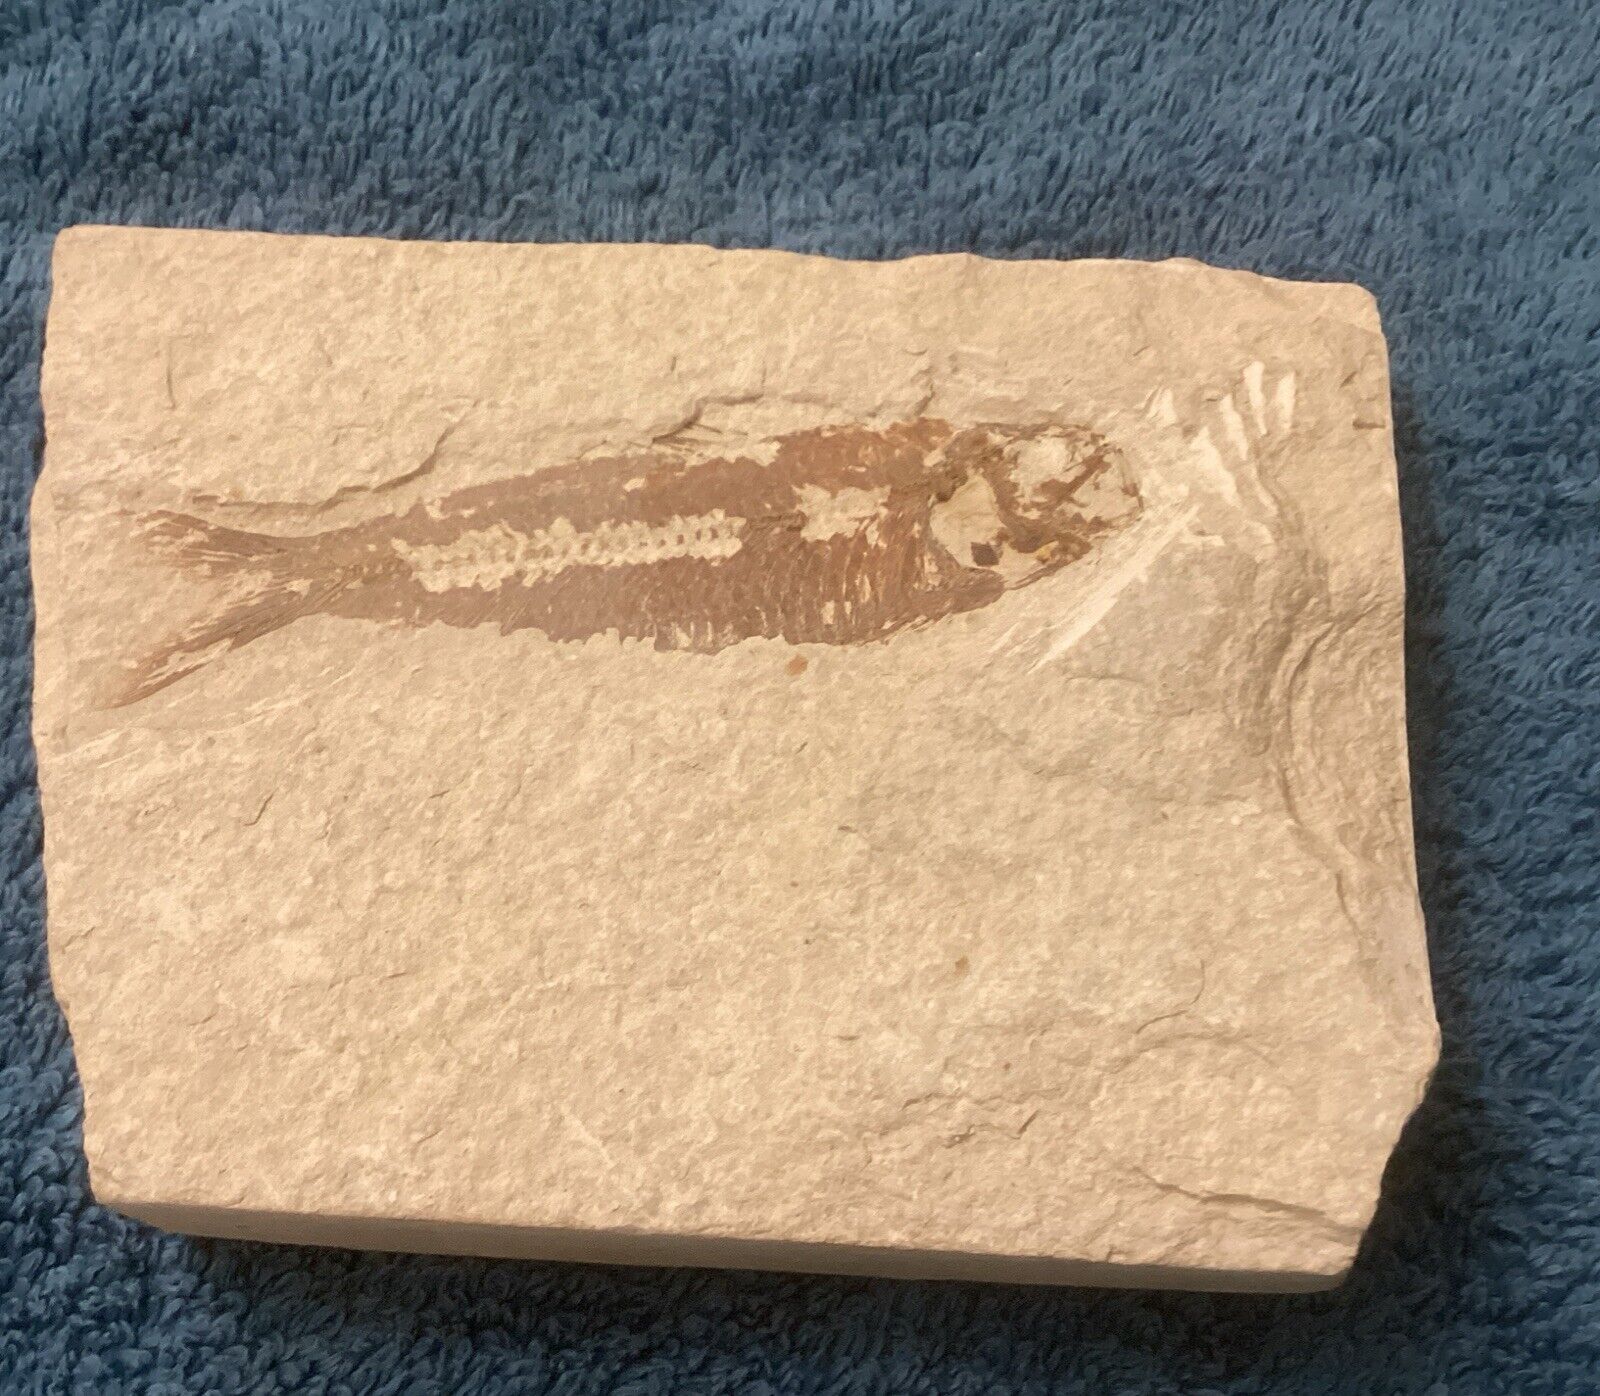 Diplomystus dentatus Fossil Fish